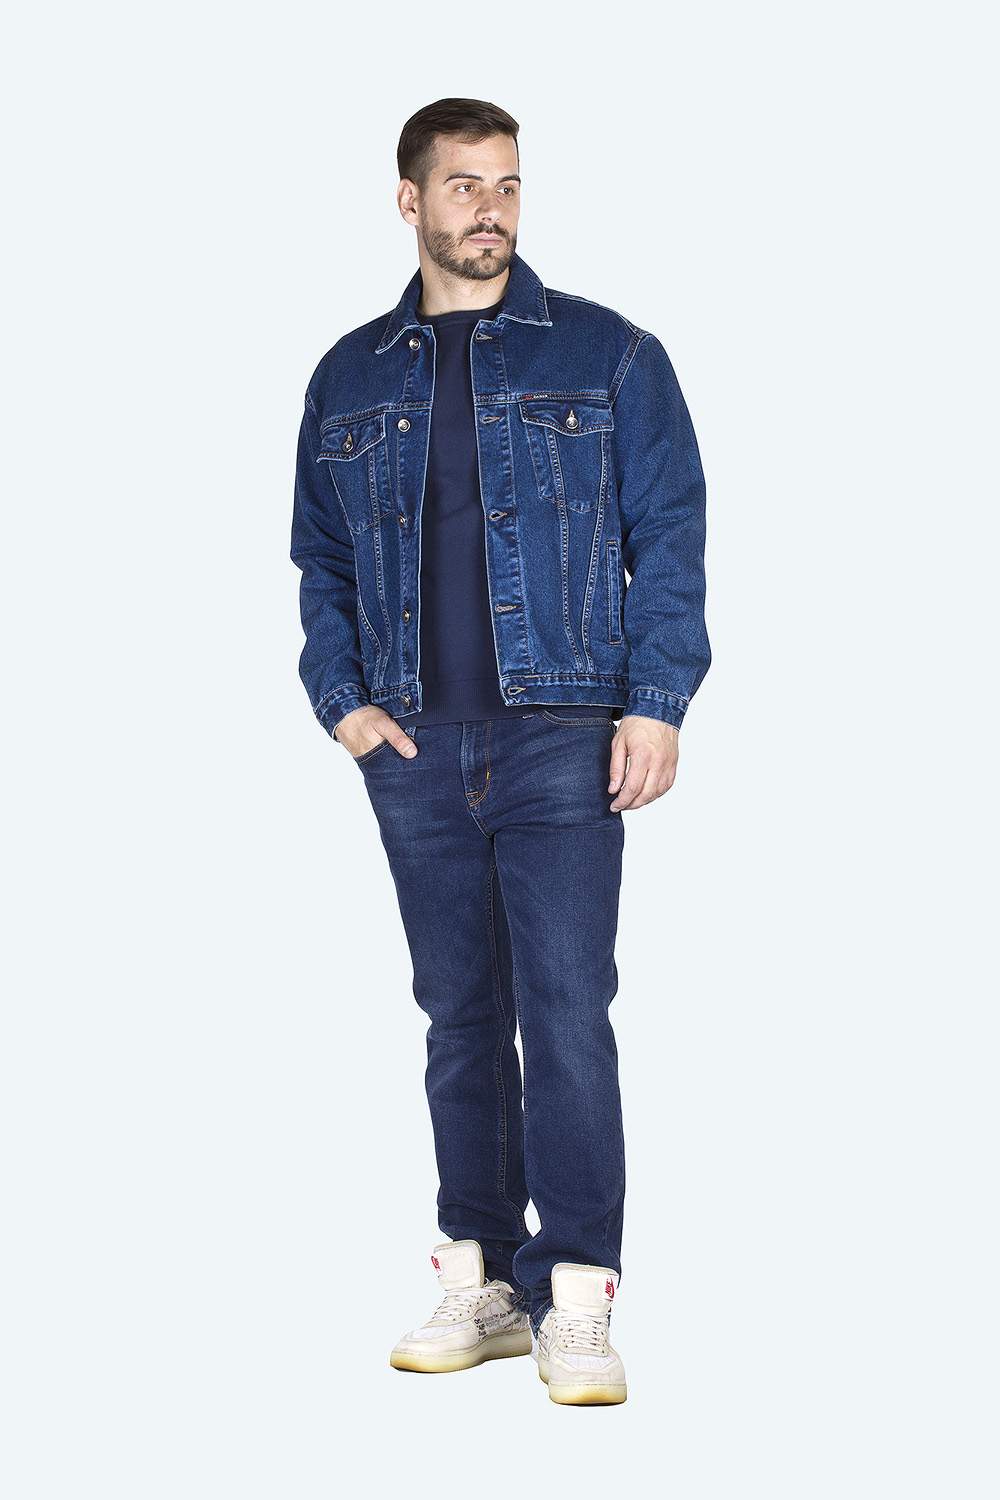 Джинсовая куртка мужская Dairos GD5060104 синяя L